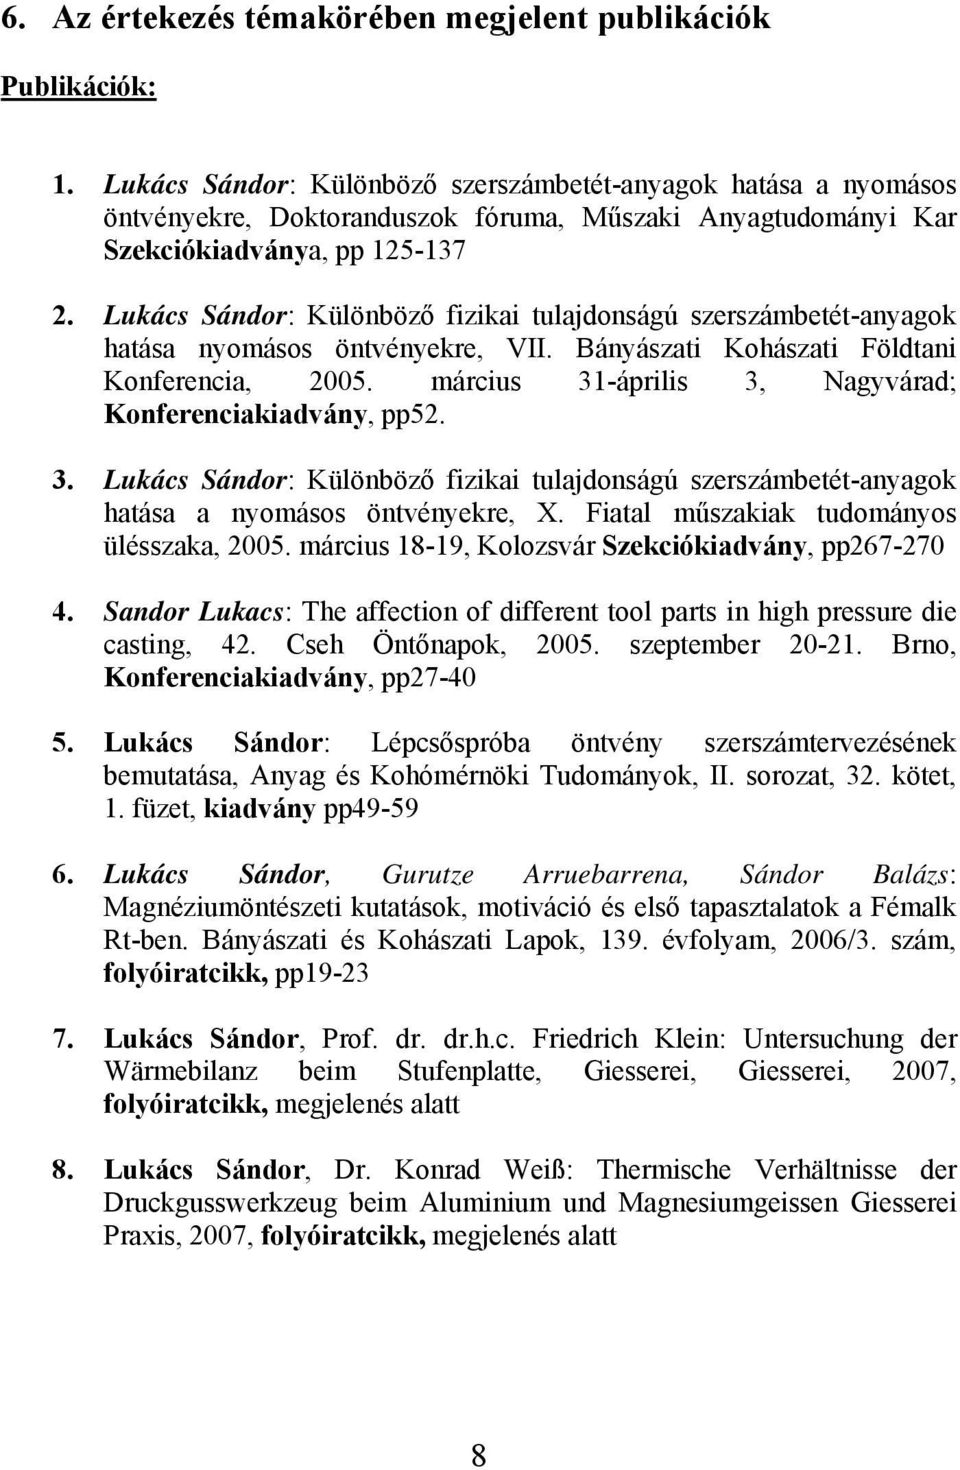 Lukács Sándor: Különböző fizikai tulajdonságú szerszámbetét-anyagok hatása nyomásos öntvényekre, VII. Bányászati Kohászati Földtani Konferencia, 2005.